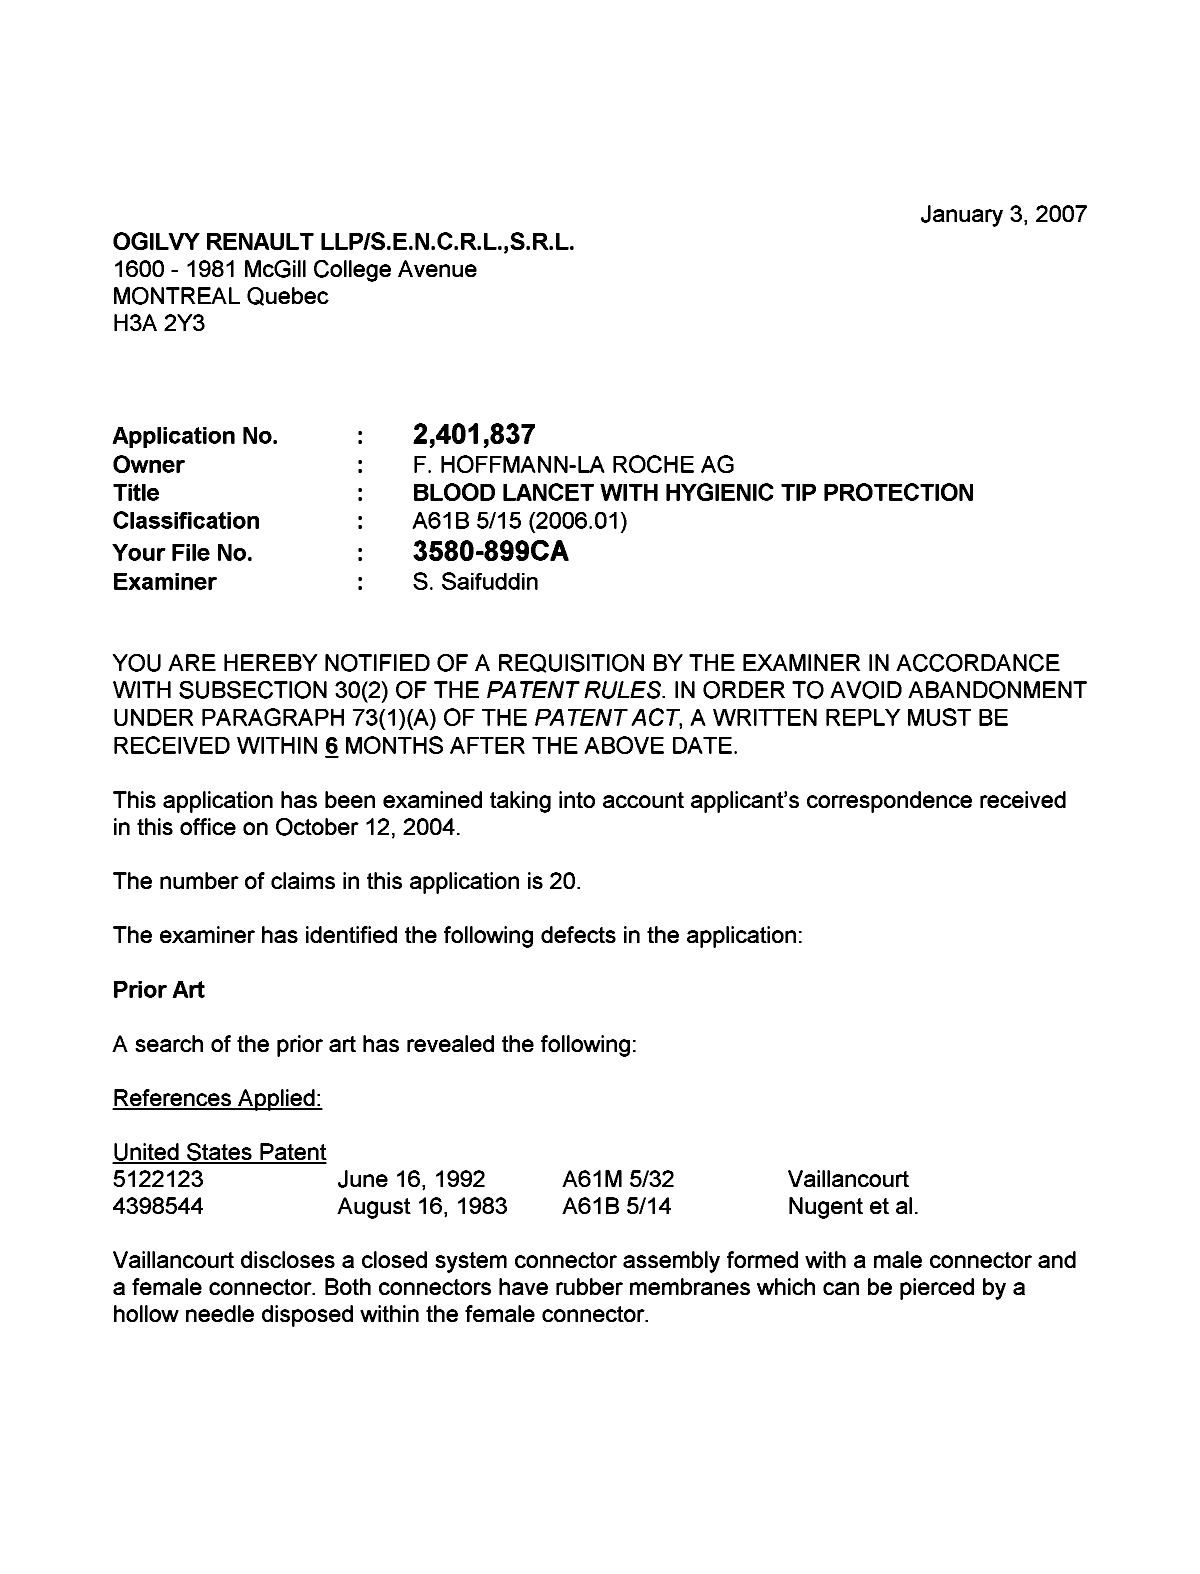 Document de brevet canadien 2401837. Poursuite-Amendment 20070103. Image 1 de 2